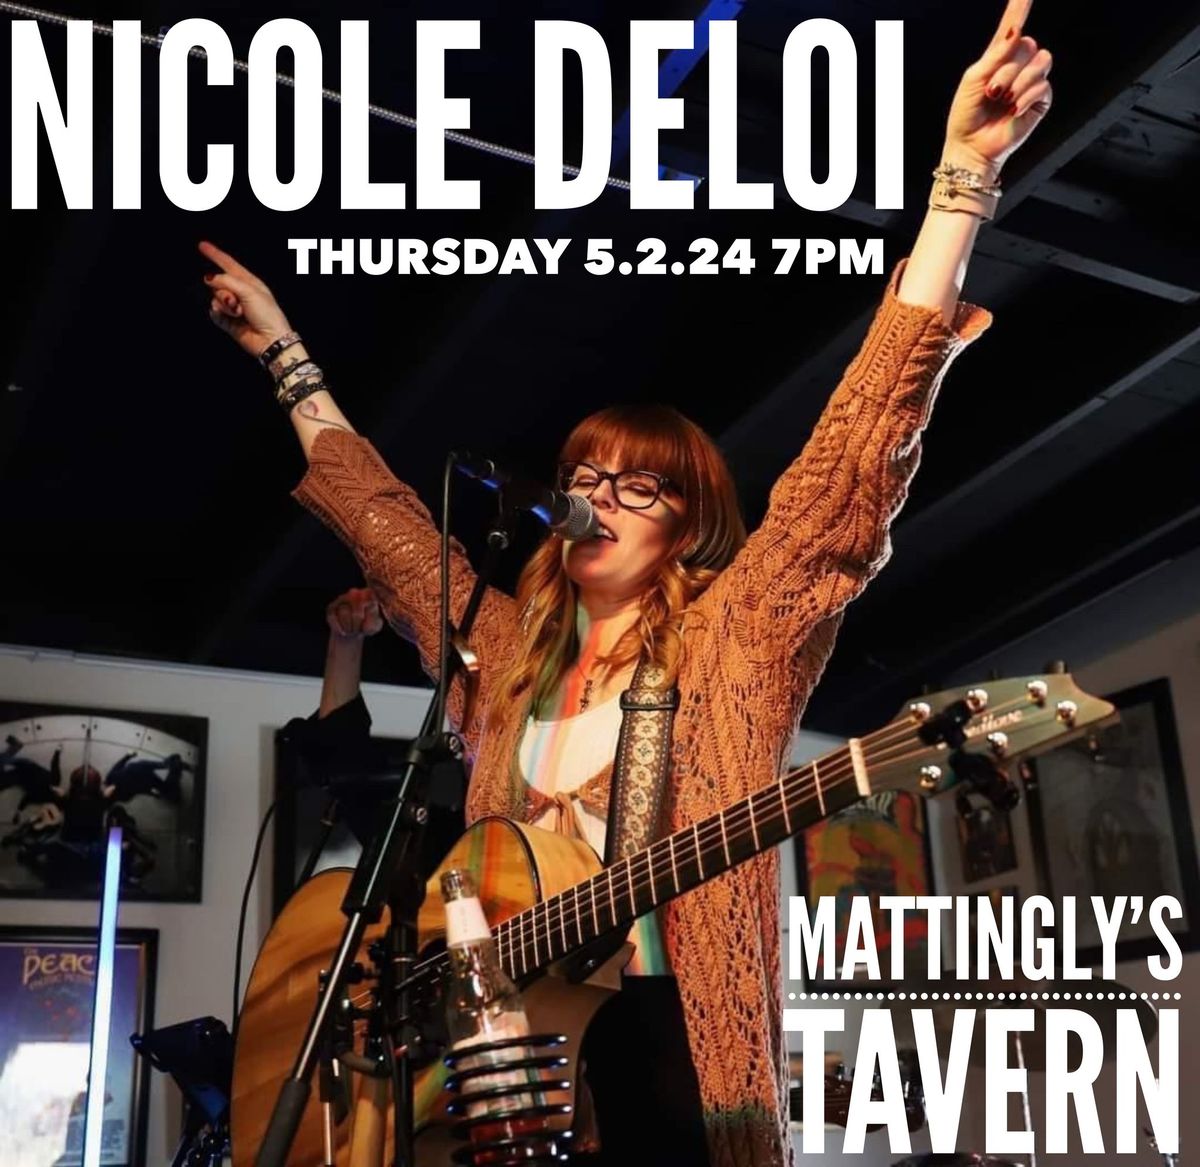 NICOLE DELOI: Live Music at Mattingly's Tavern